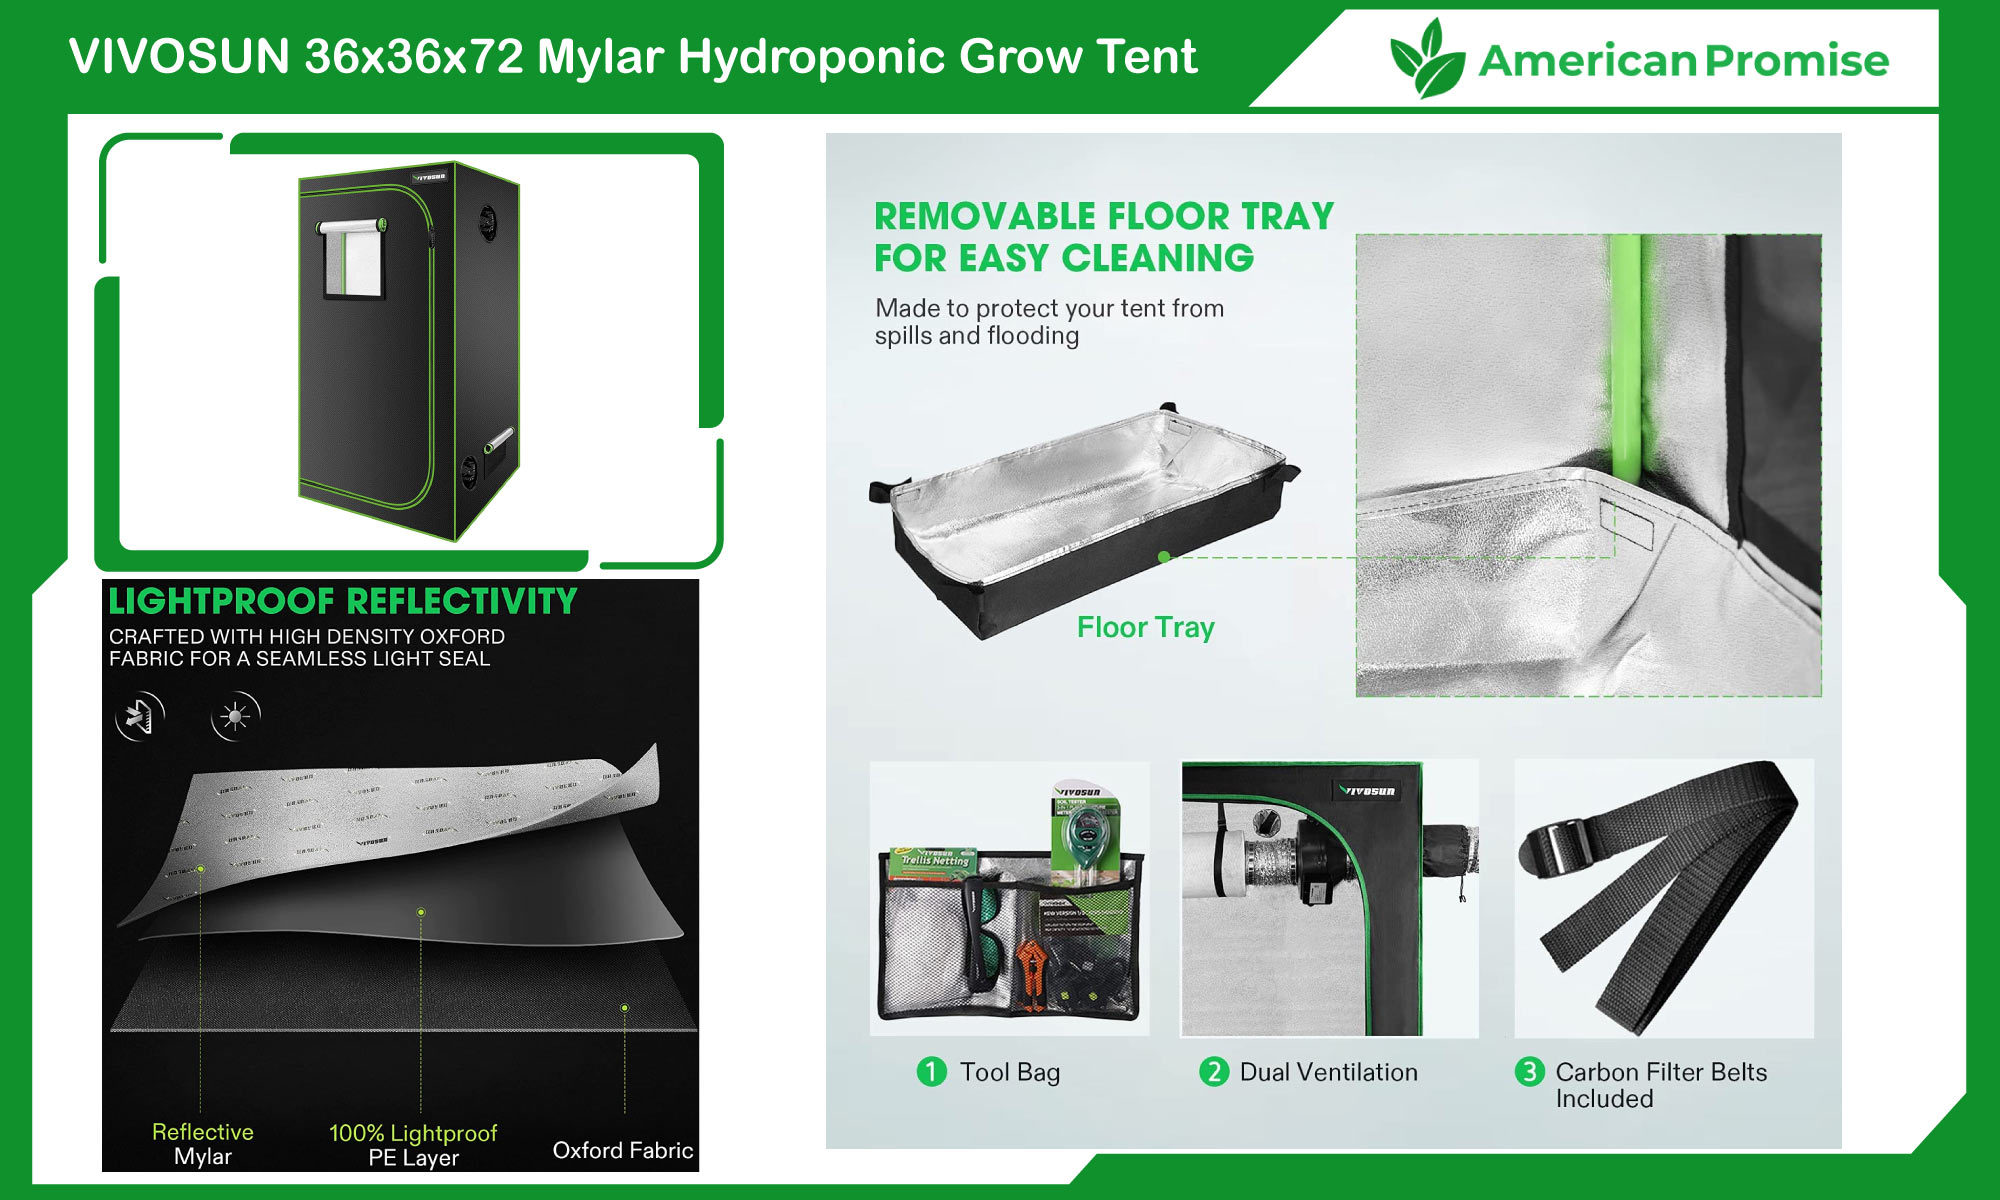 VIVOSUN 36"x36"x72" Mylar Hydroponic Grow Tent